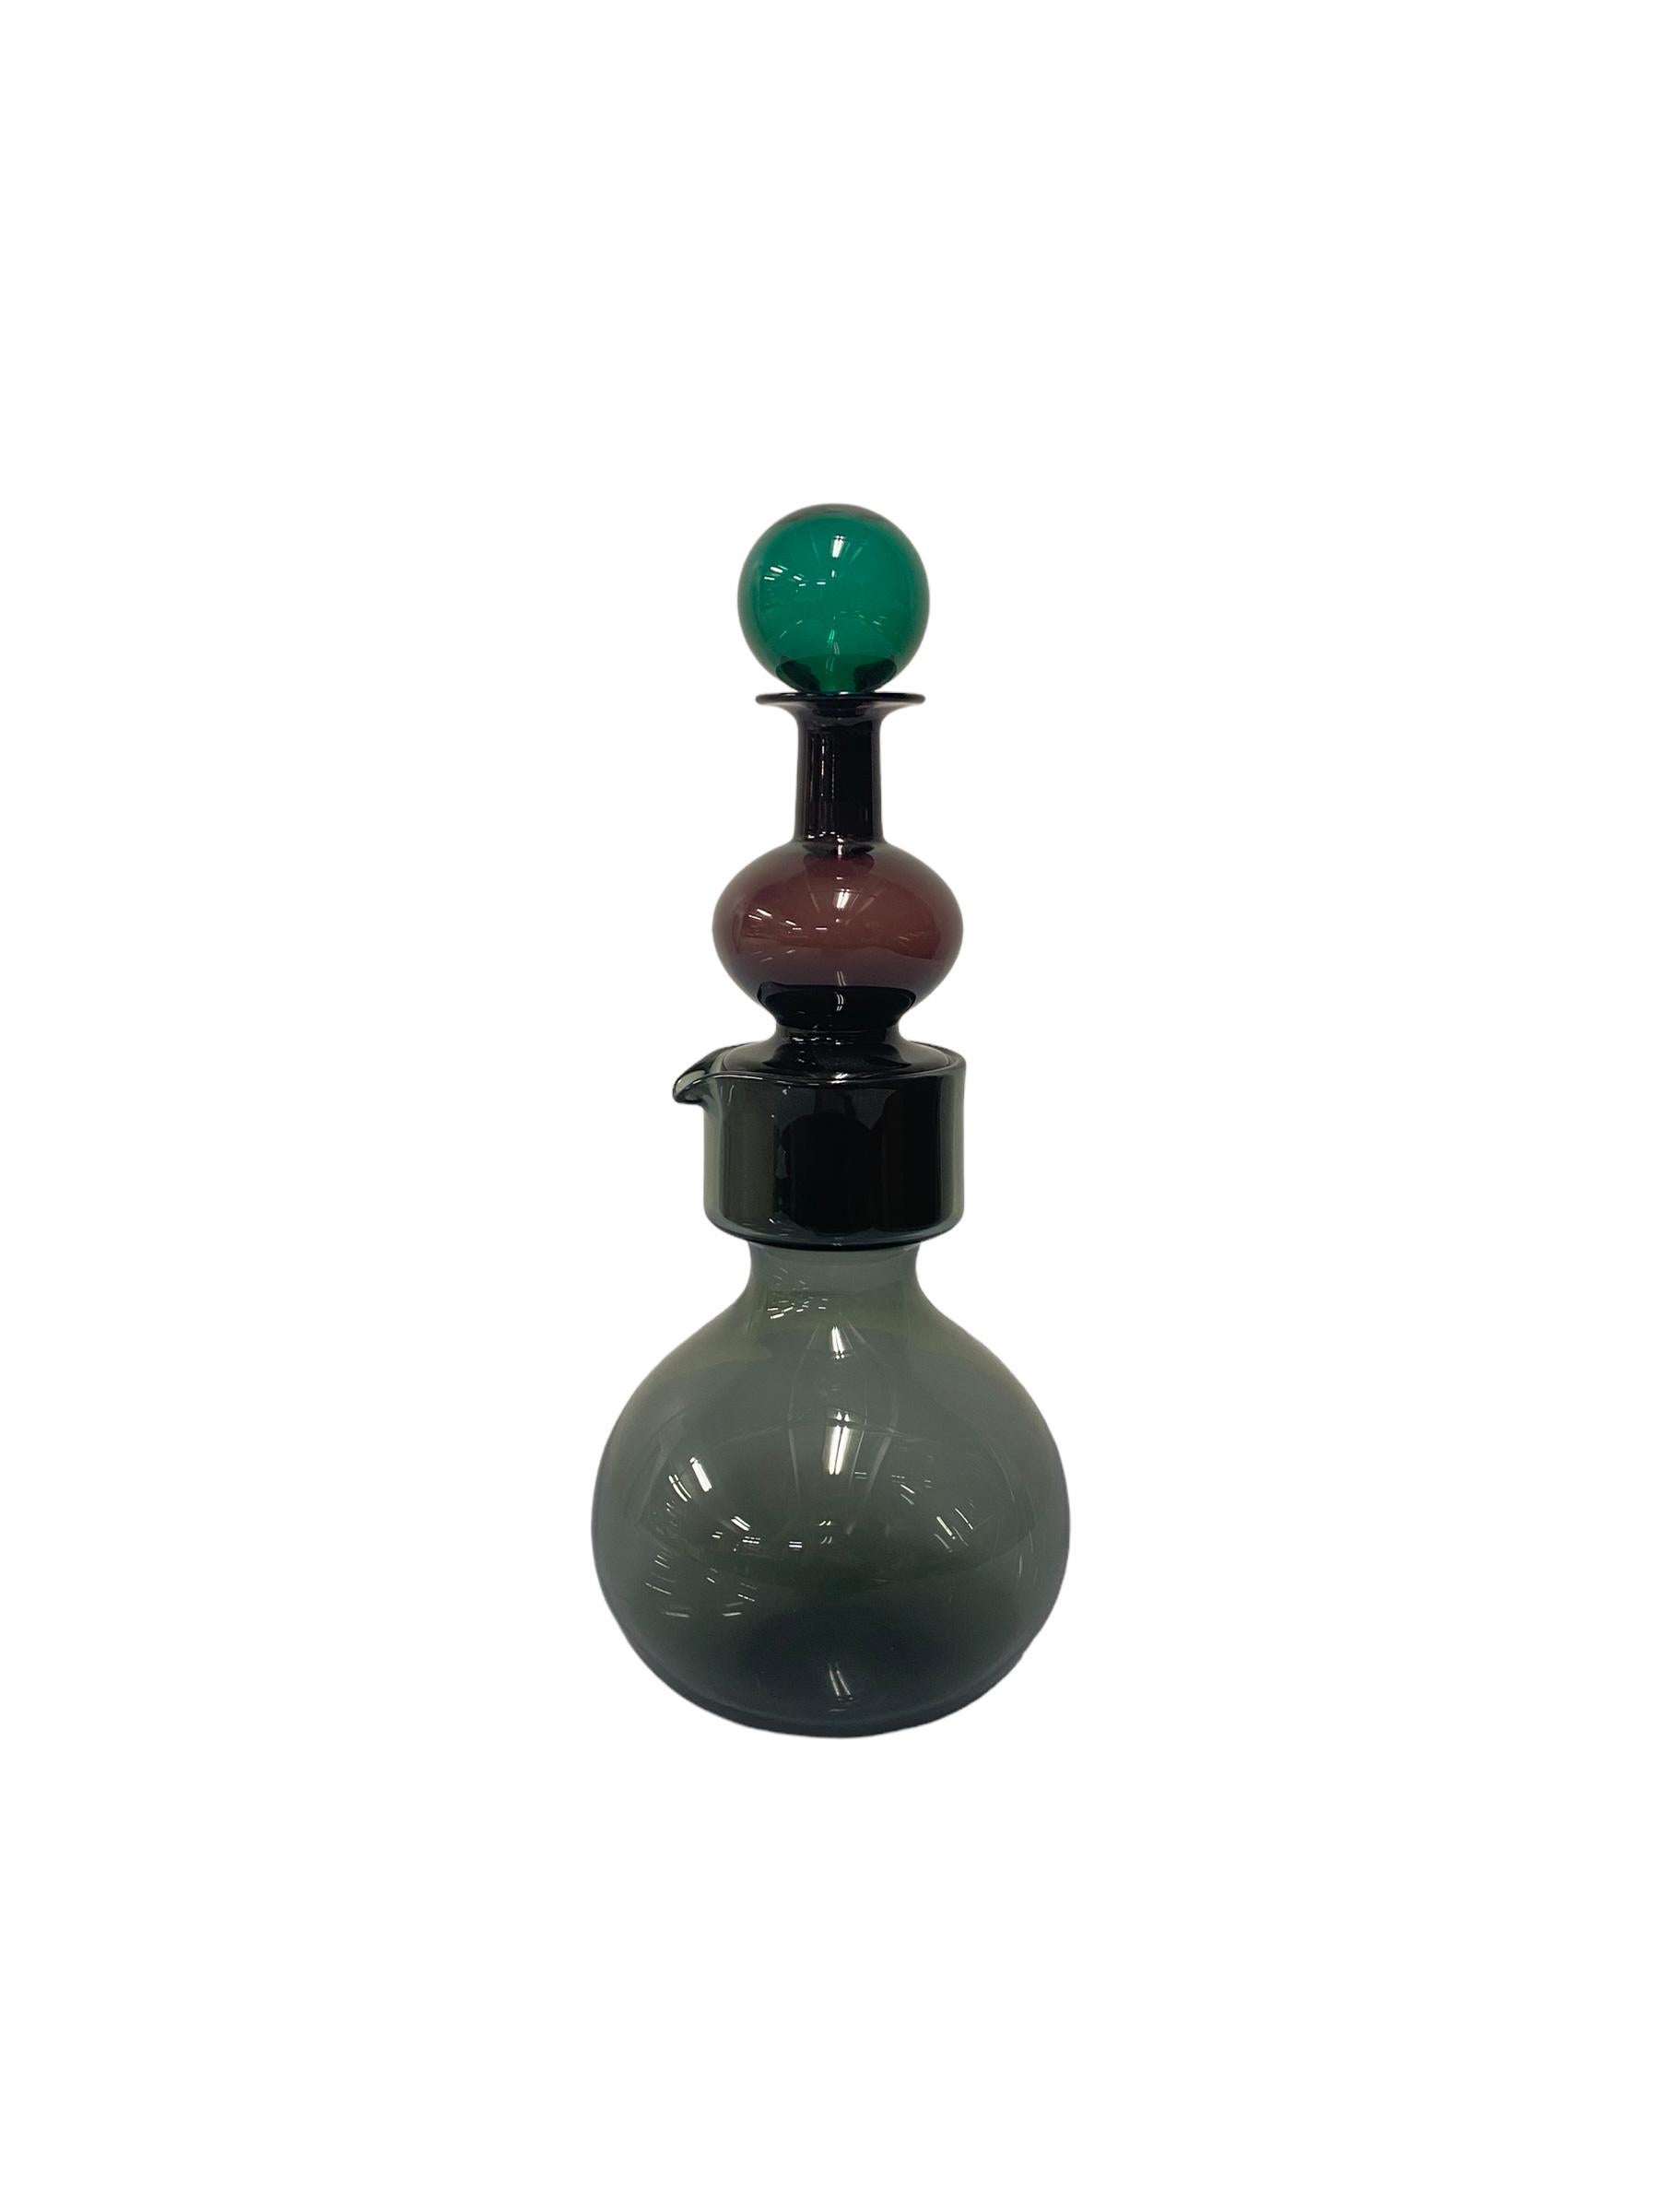 Blown Glass Kaj Franck `Kremlin Bells` Decanter for Nuutajärvi,  Notsjö  1965 For Sale